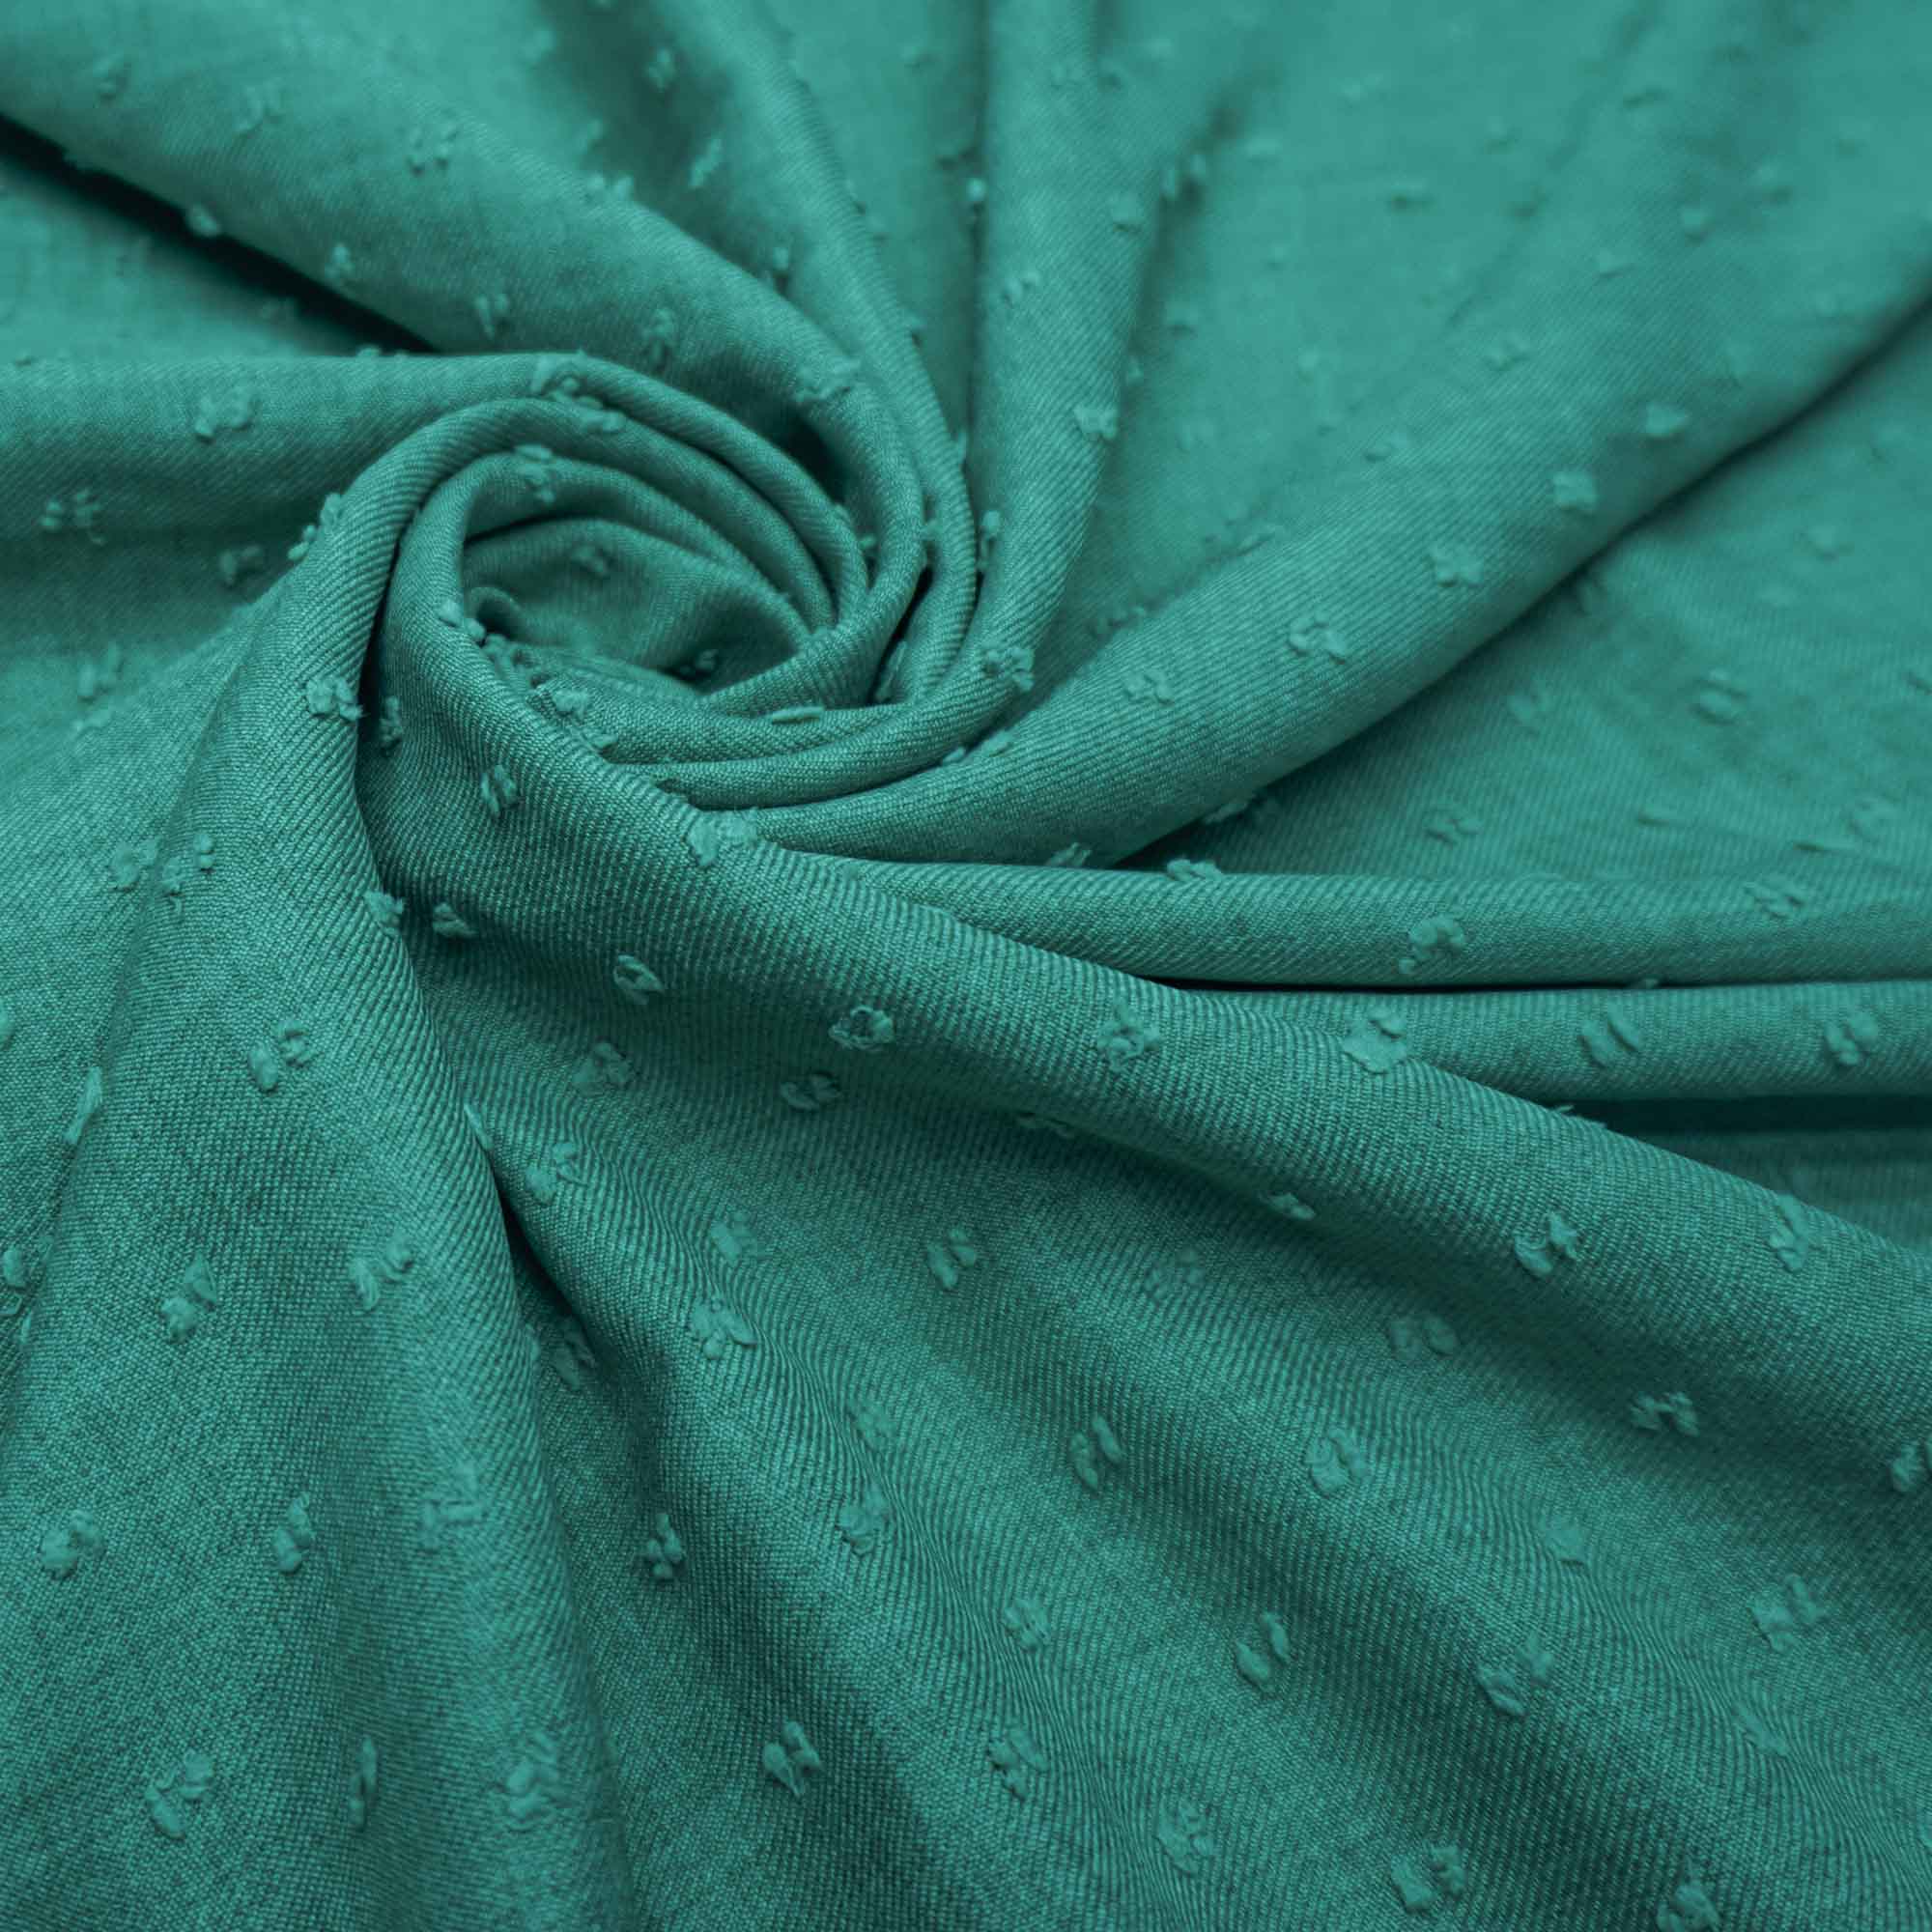 Tecido poliester com textura de linho pipoquinha verde turquesa claro